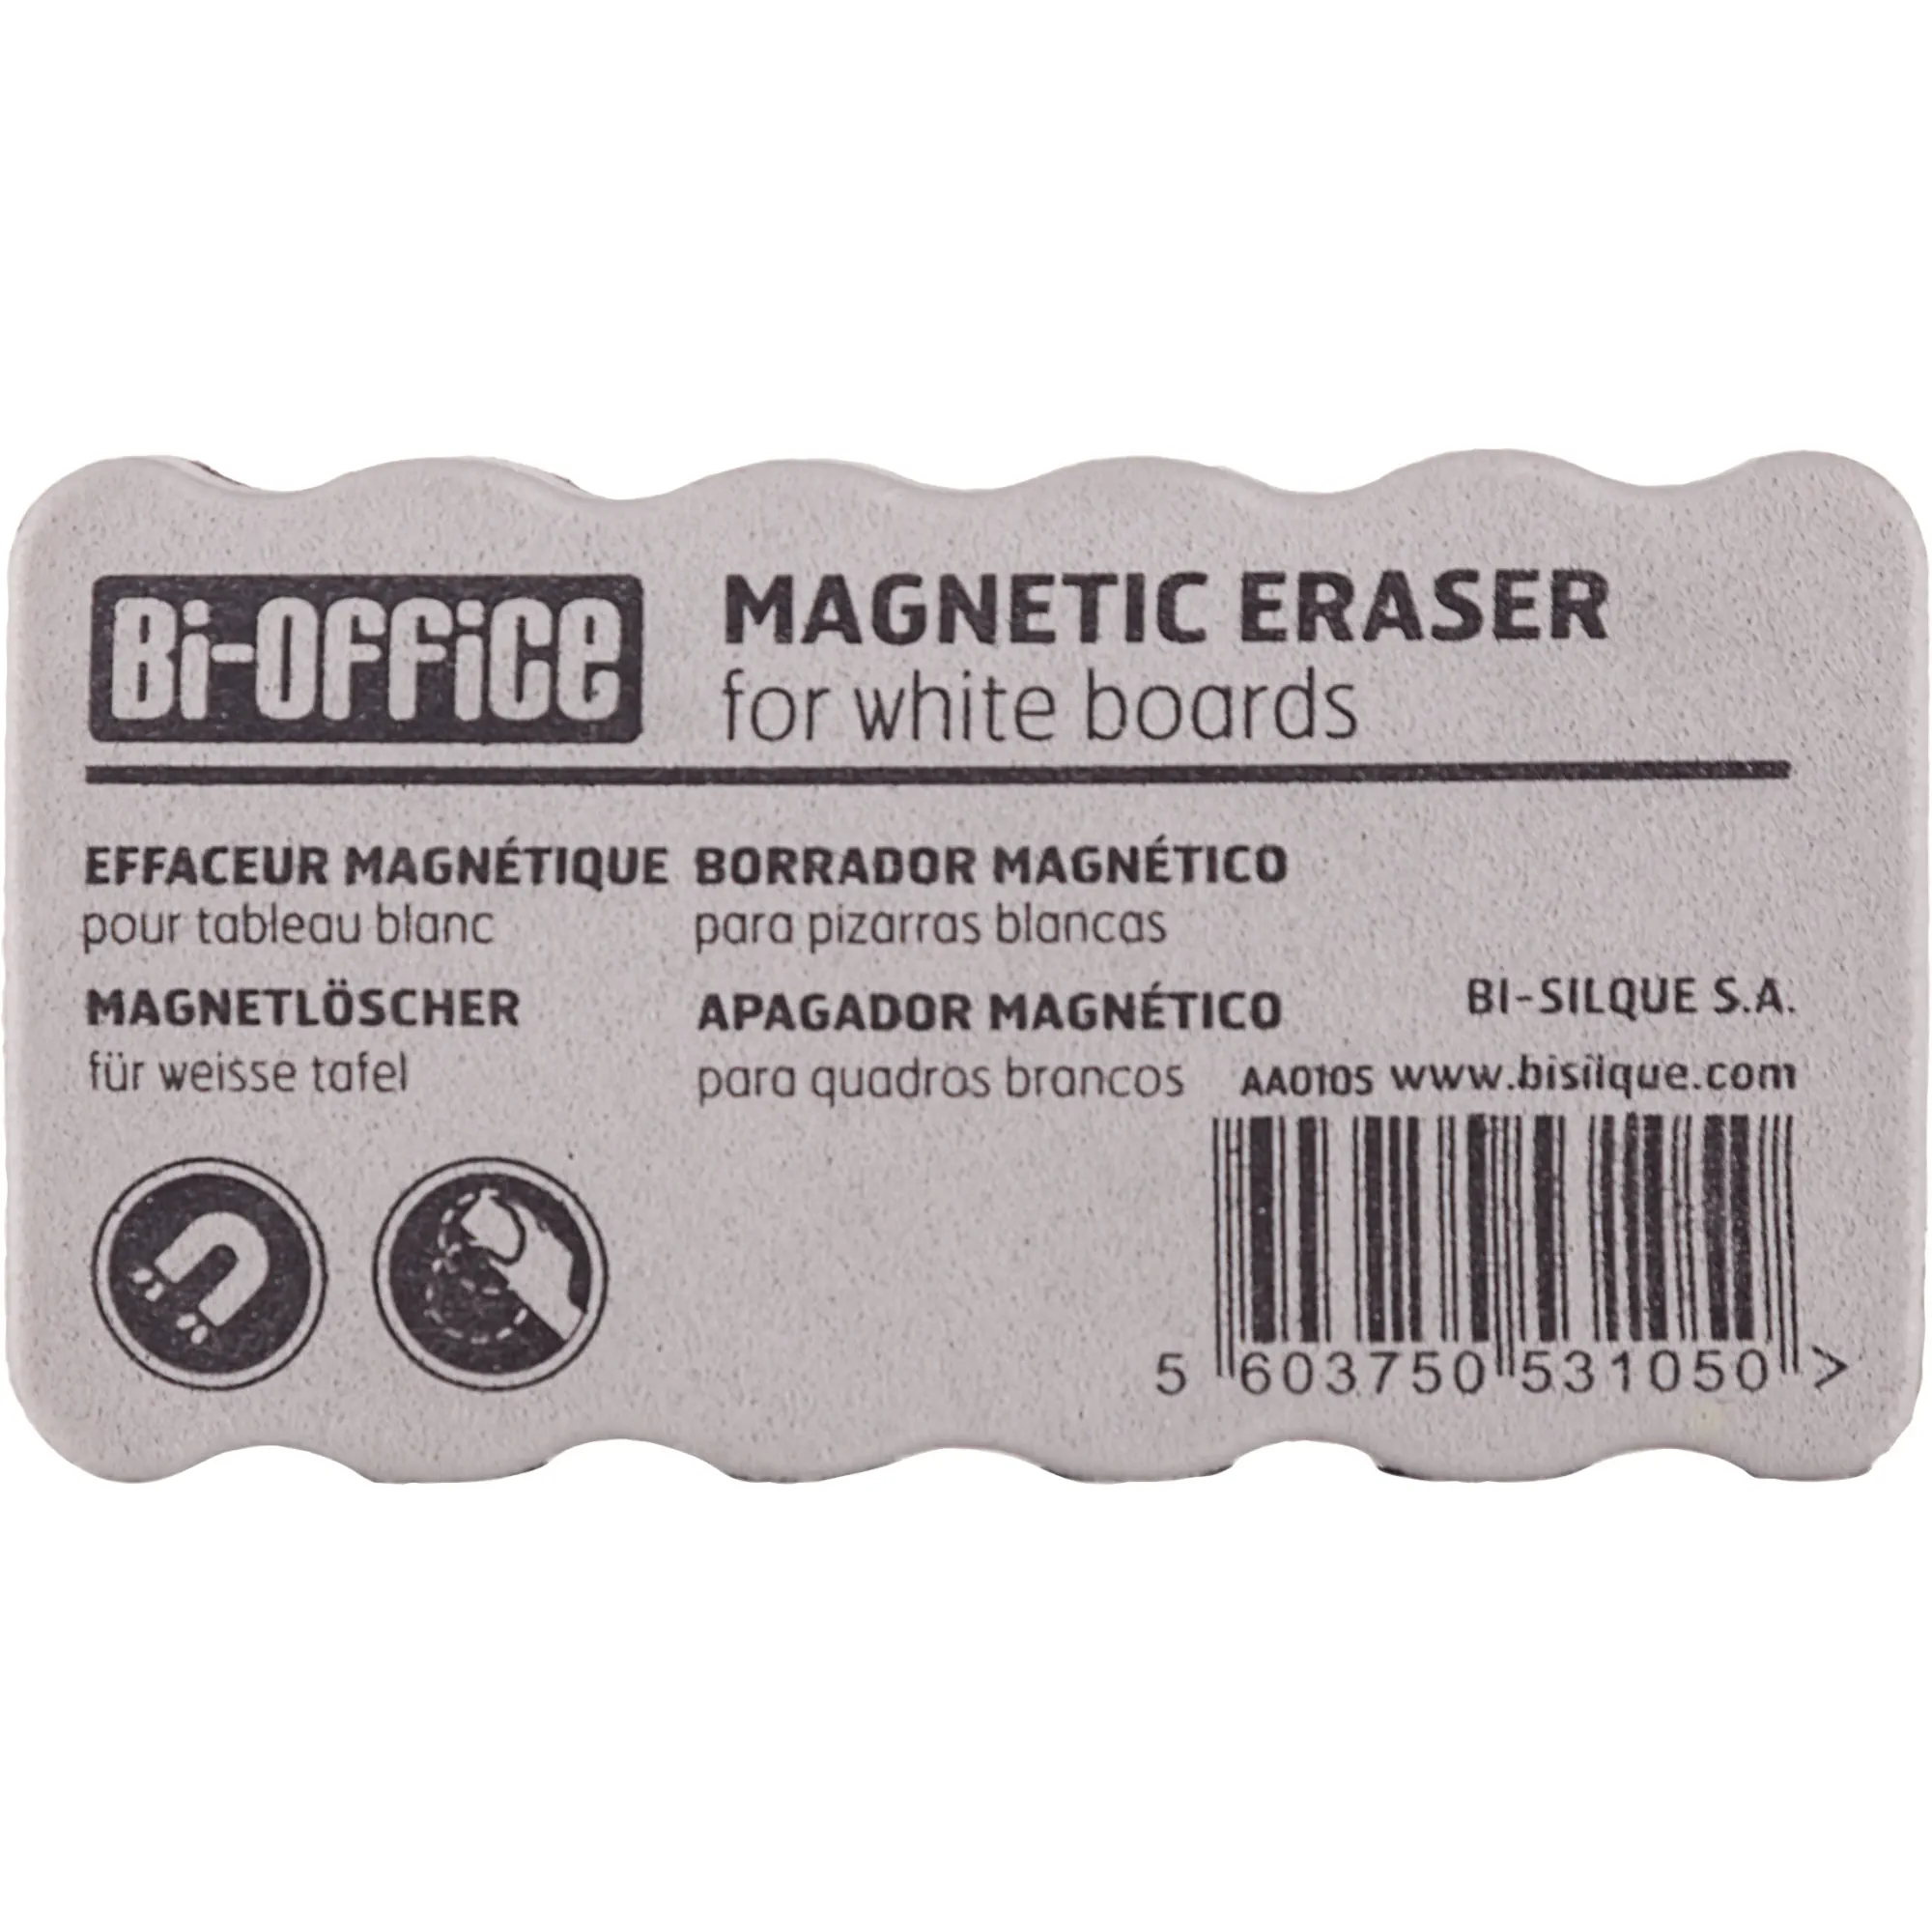 BI-OFFICE Tafelwischer Magnetic Eraser schwarz/grau